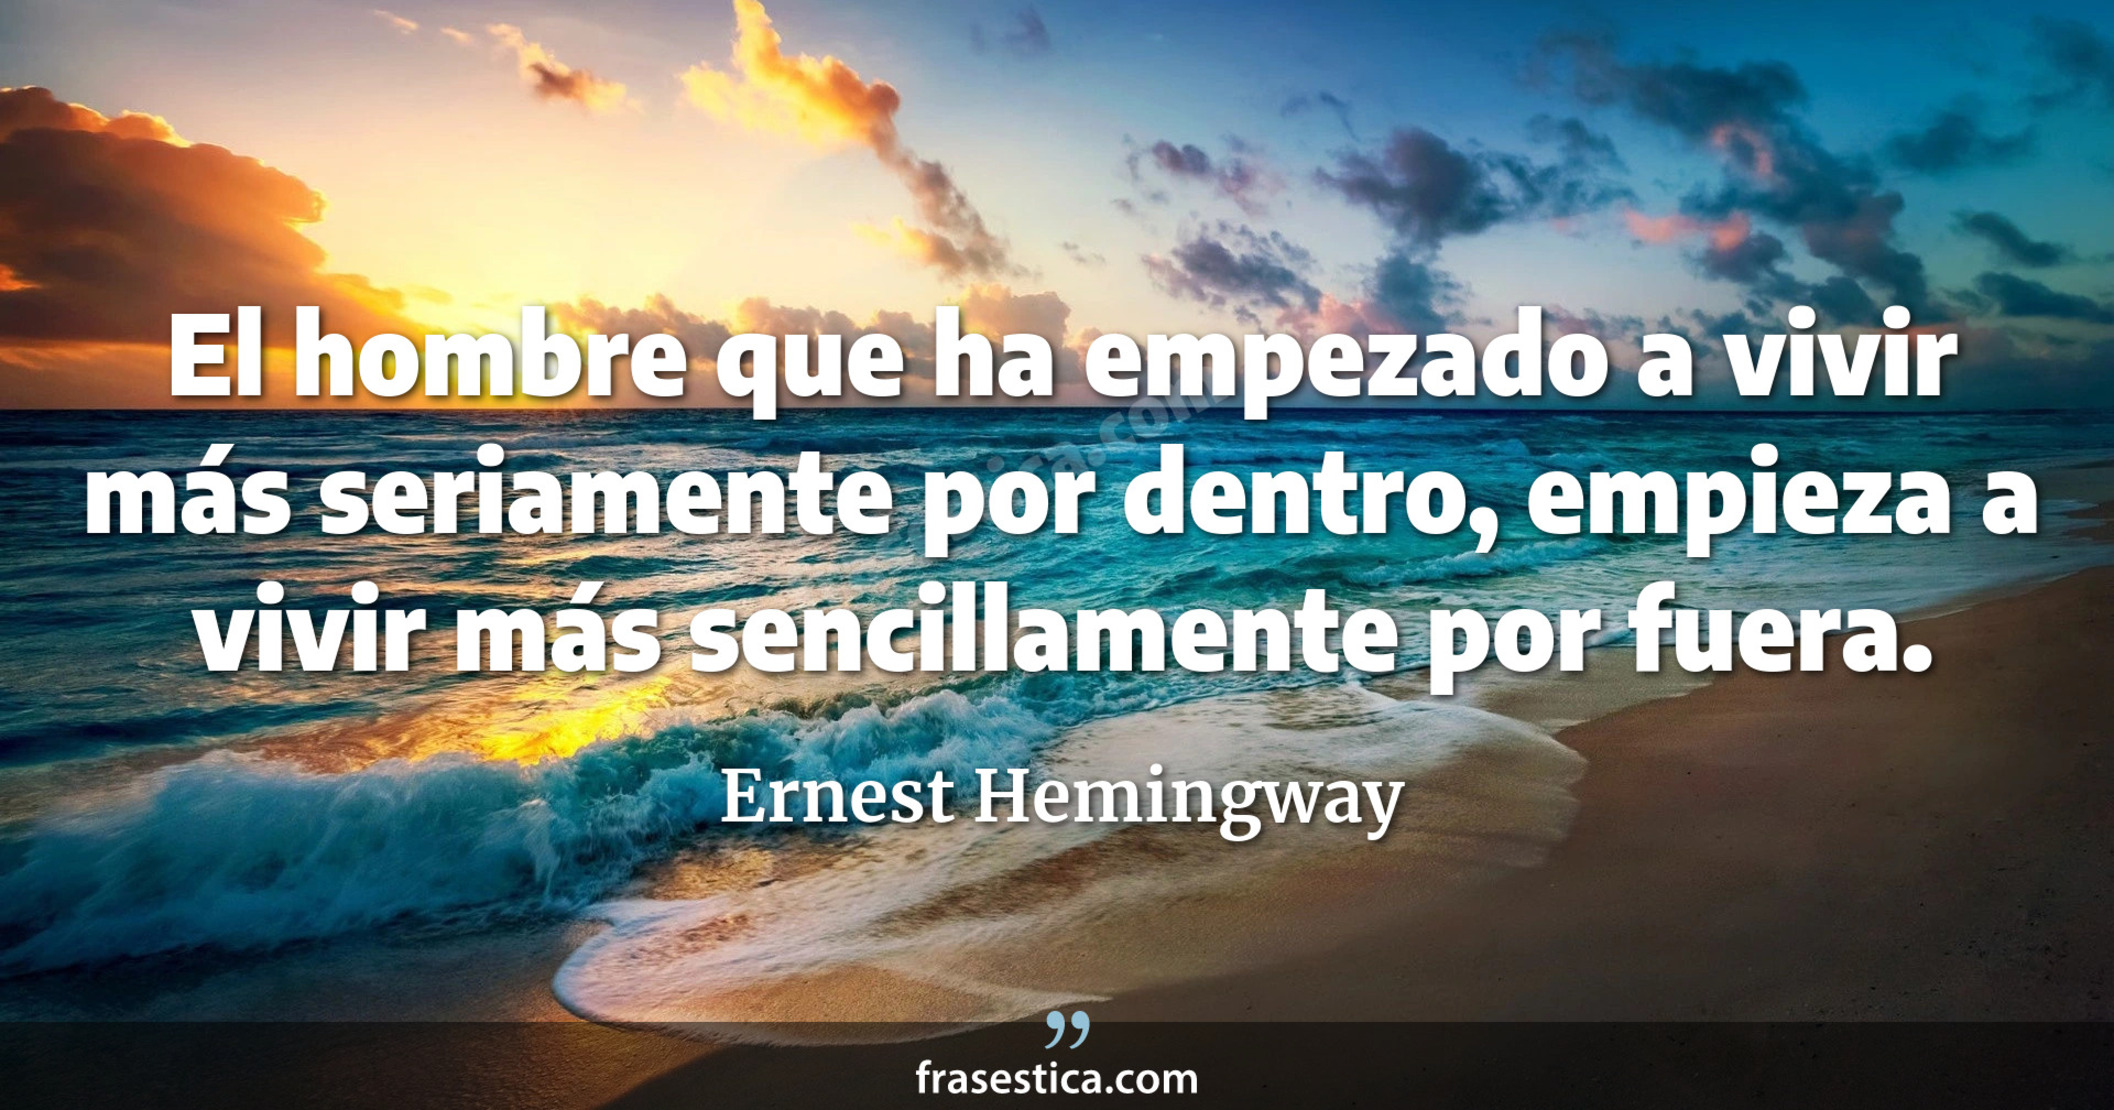 El hombre que ha empezado a vivir más seriamente por dentro, empieza a vivir más sencillamente por fuera. - Ernest Hemingway